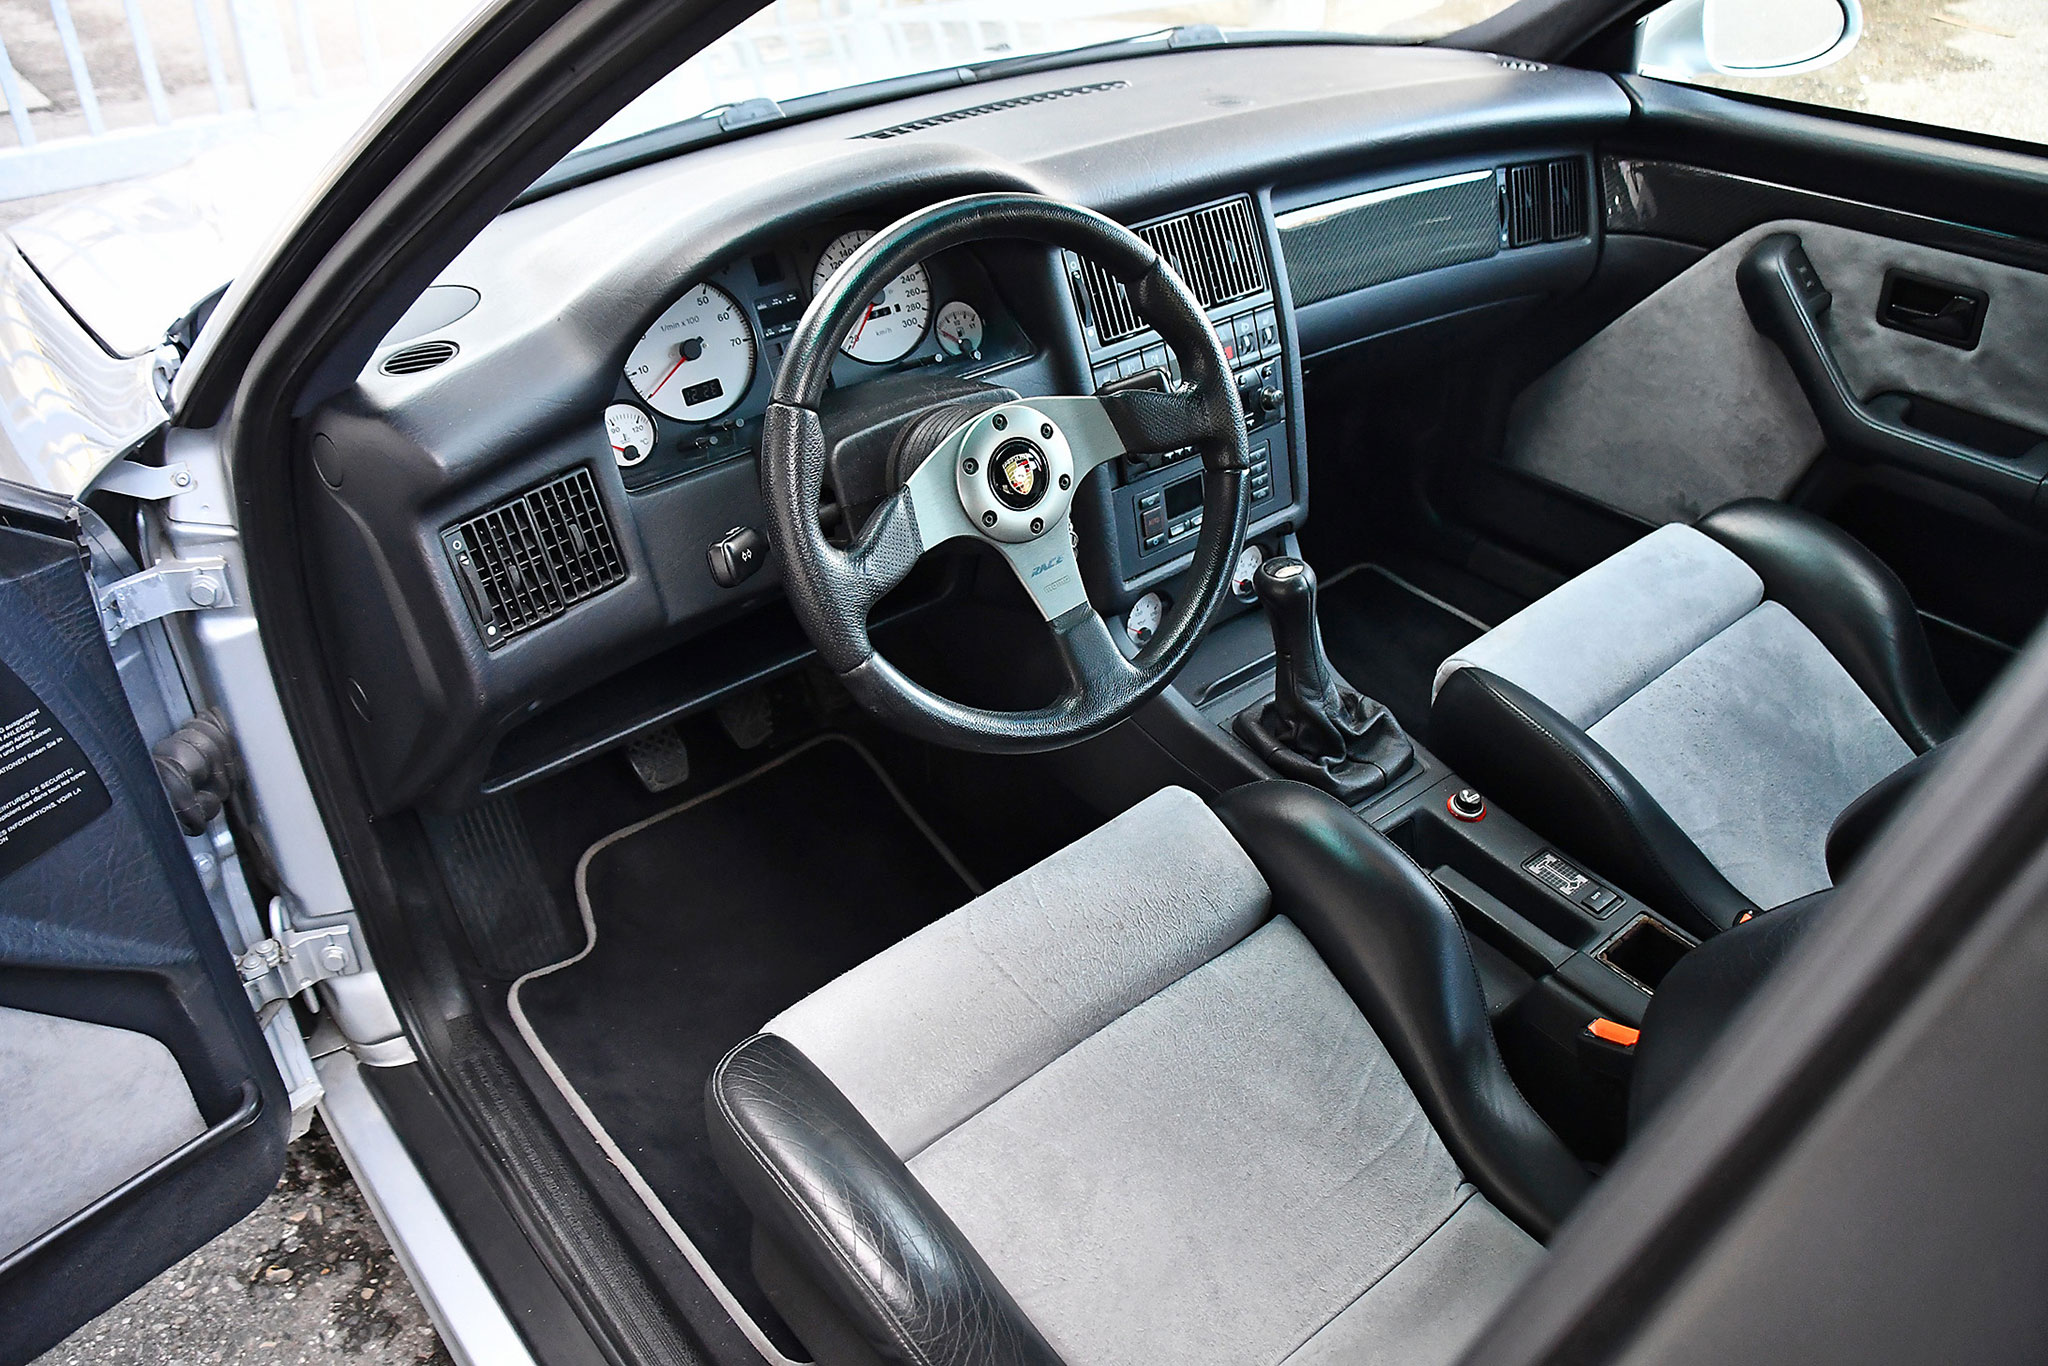 1994 Audi Porsche RS2 intérieur avec sièges Recaro à l’avant.